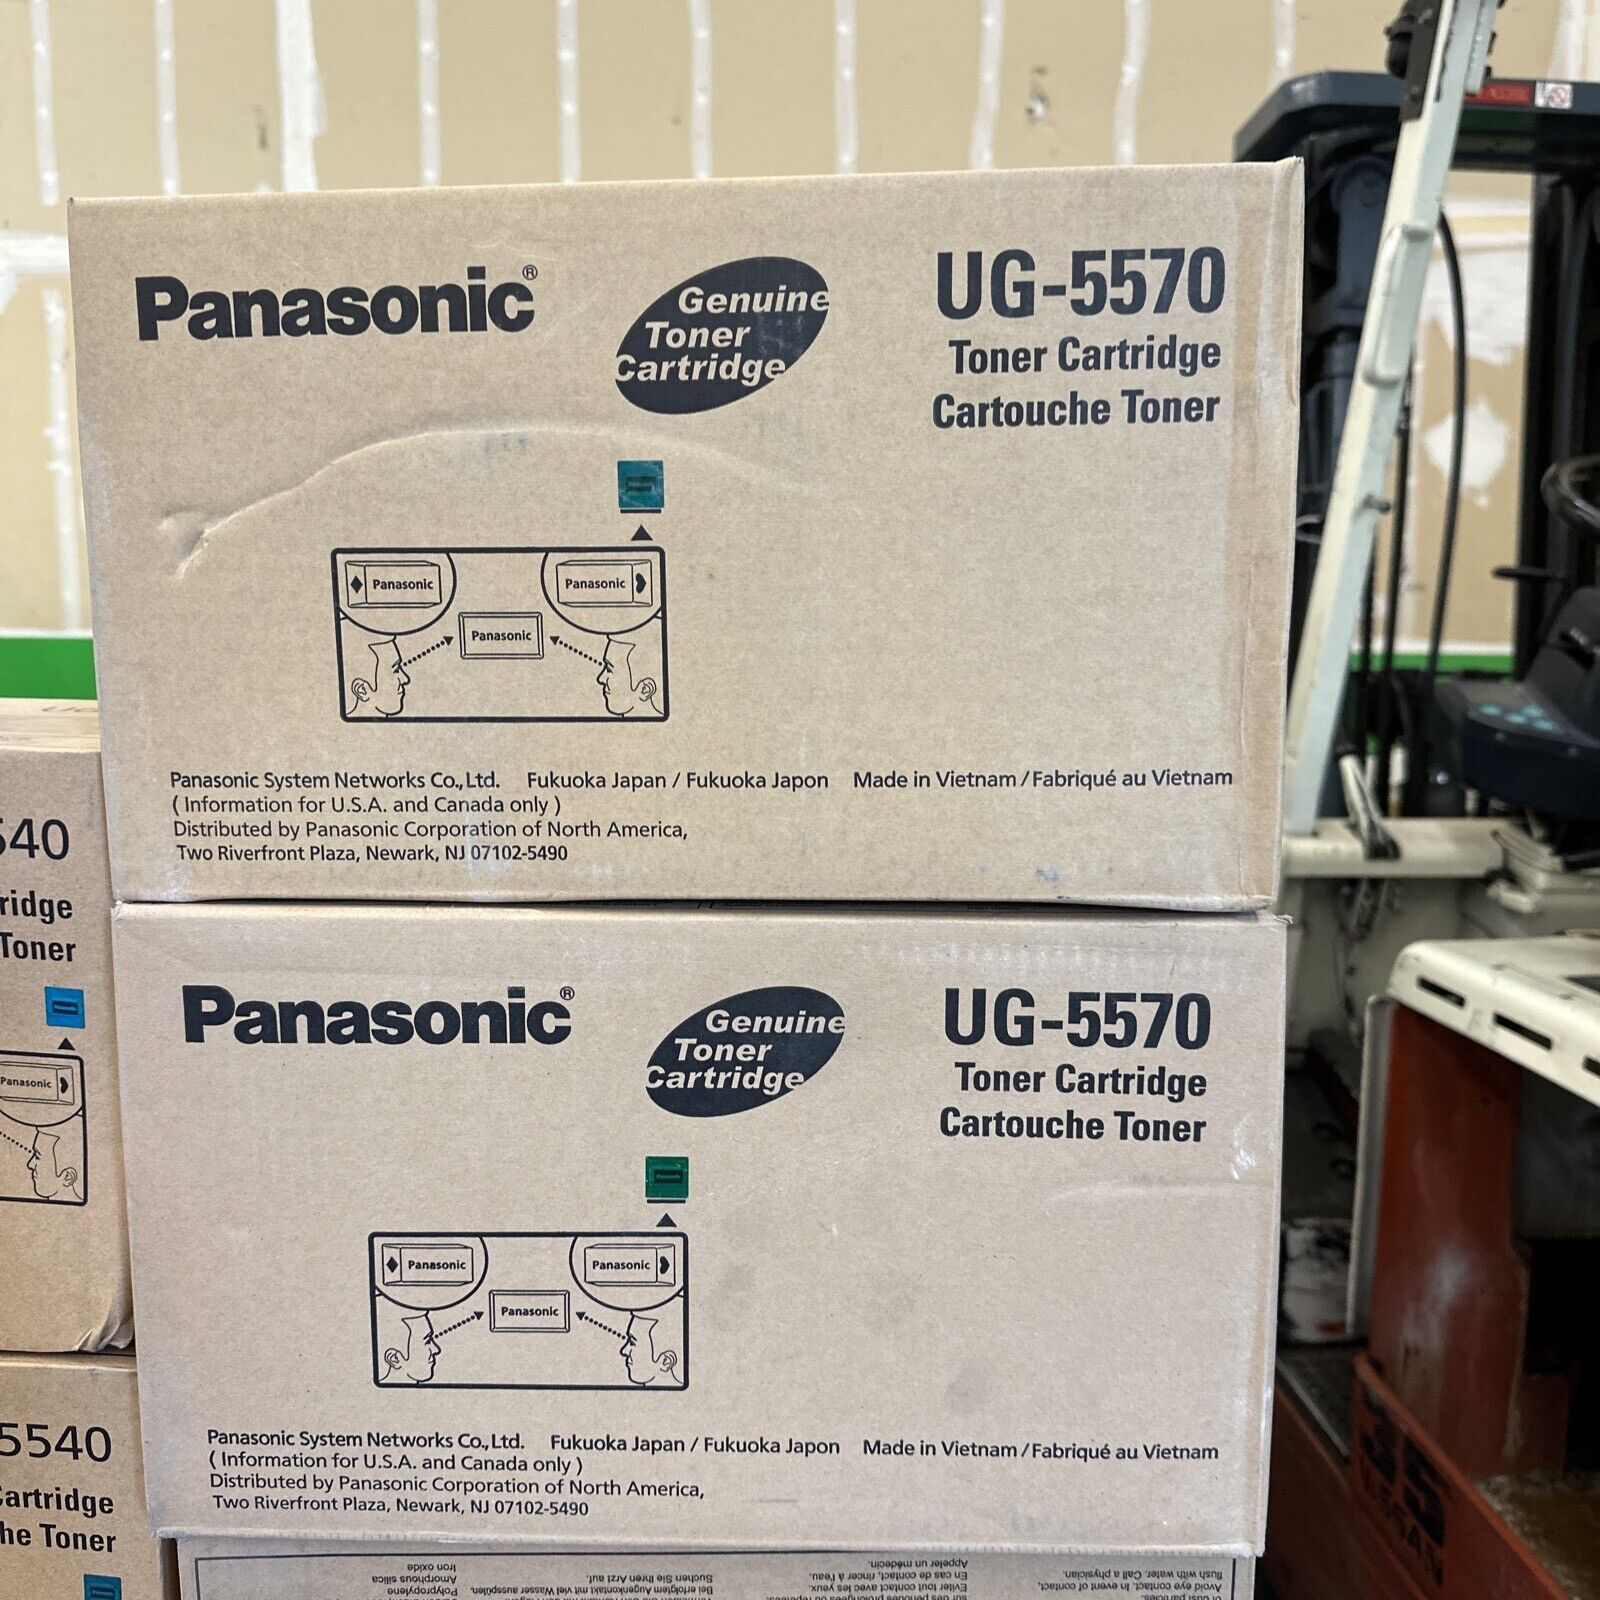 1 NEW Panasonic UG-5570 UG-5570-AUC Black Toner Cartridge -Factory Sealed